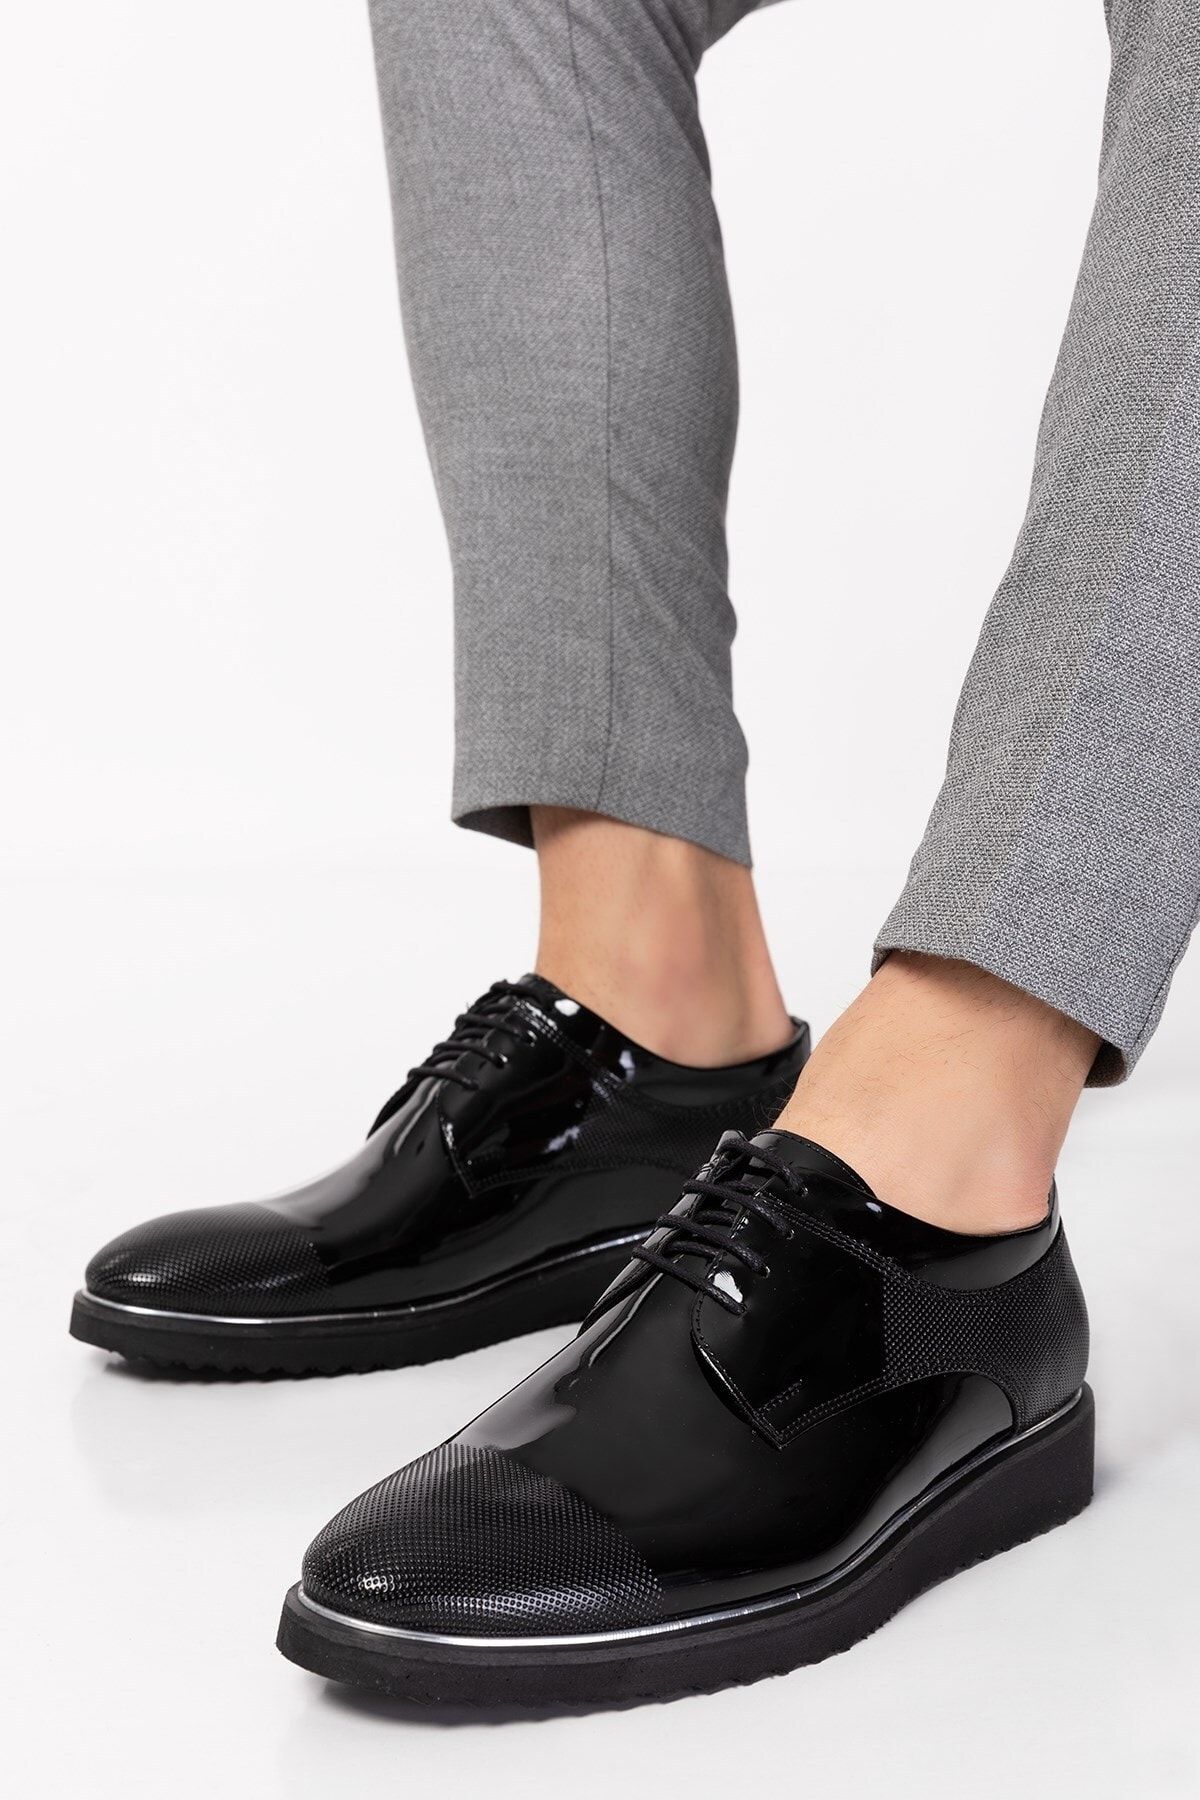 depderi Erkek Damatlık Ve Takım Elbiseye Uygun Italyan Tasarım Klasik Ayakkabı